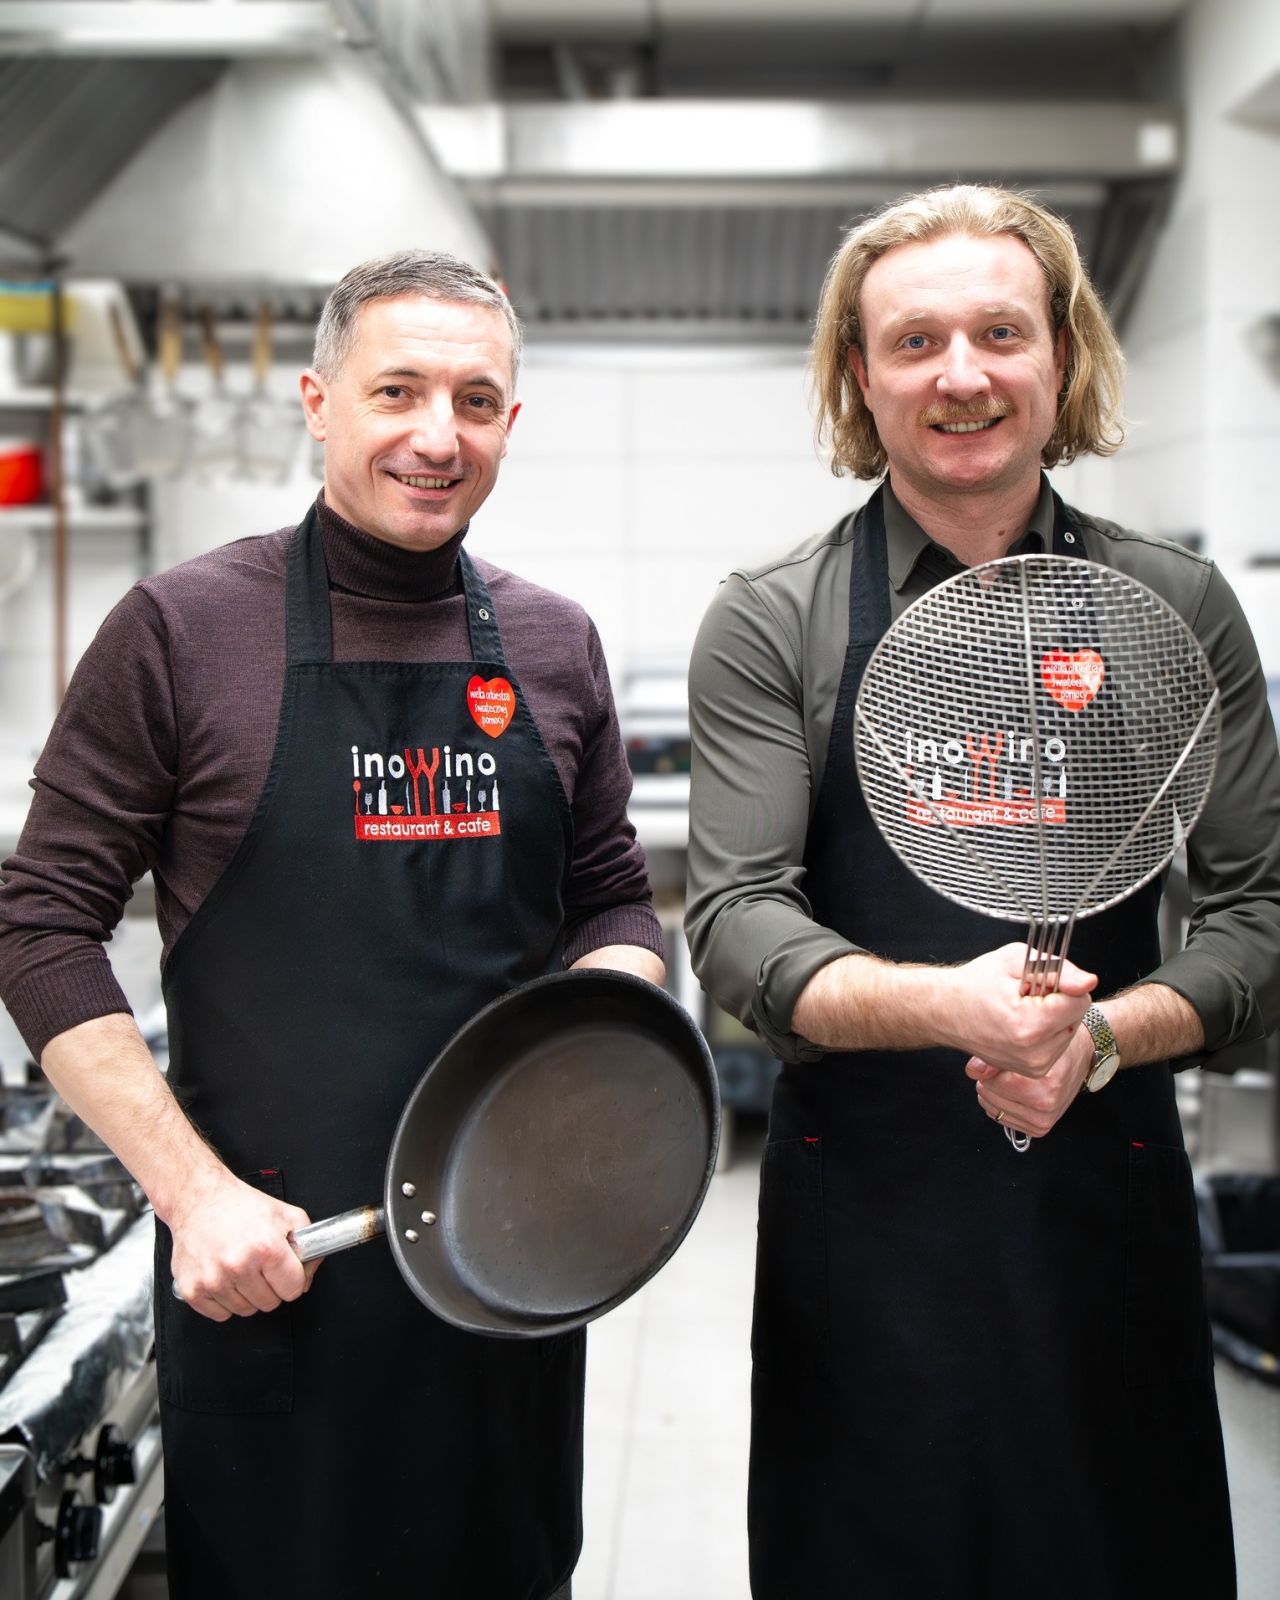 Prezydent Piotr Kuczera i szef restauracji Ino Wino ugotują obiad dla zwycięzcy licytacji WOŚP